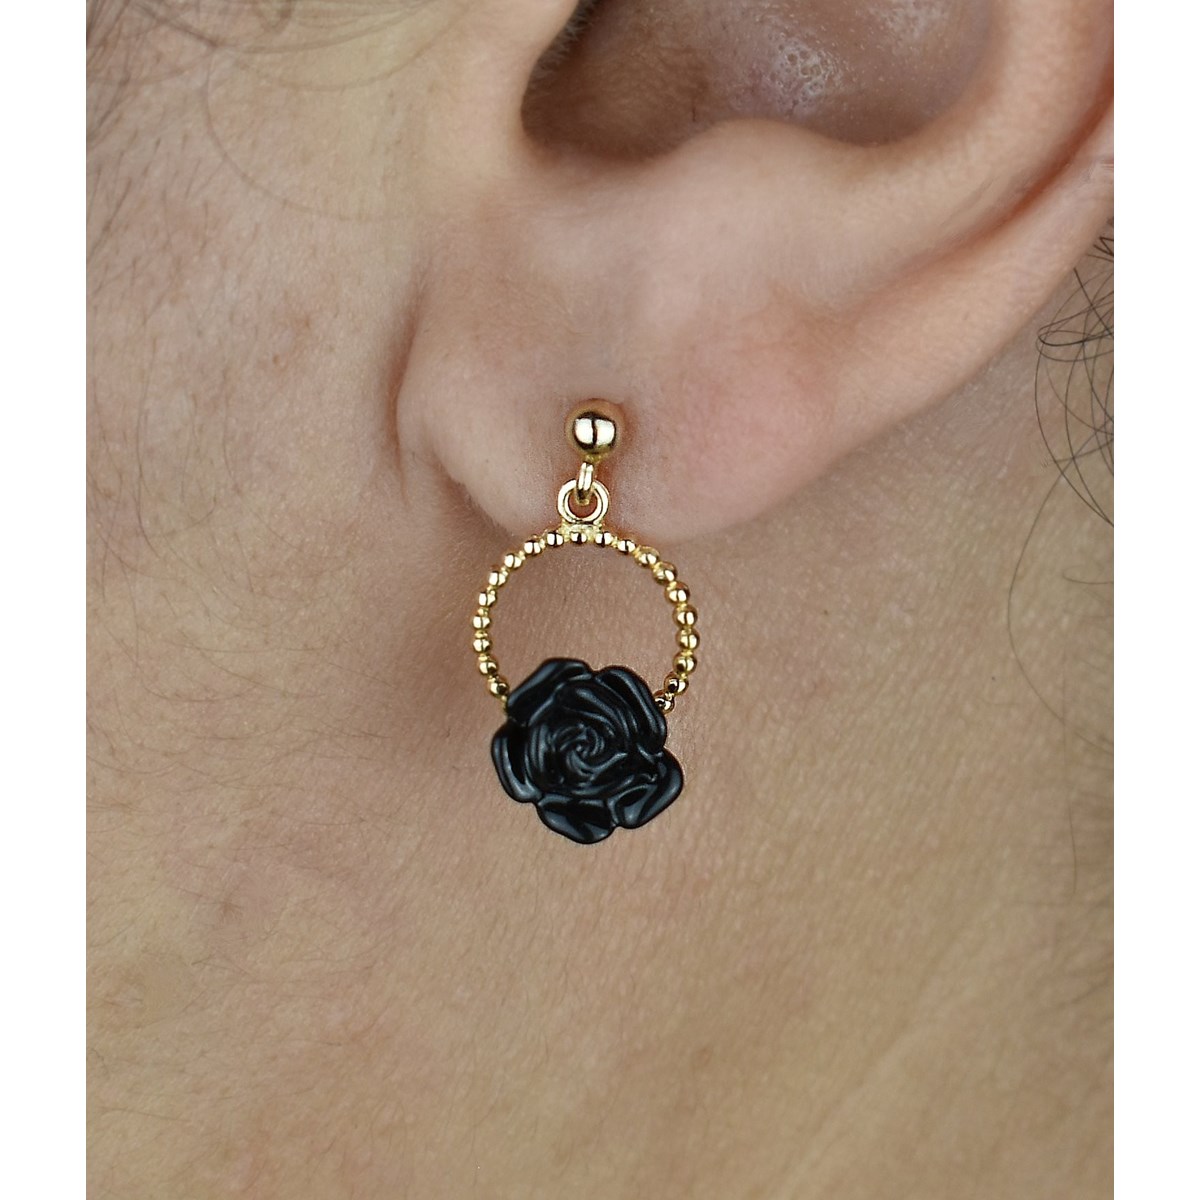 Boucles d'oreilles cercle de fleur rose en céramique noire Plaqué OR 750 3 microns - vue 2